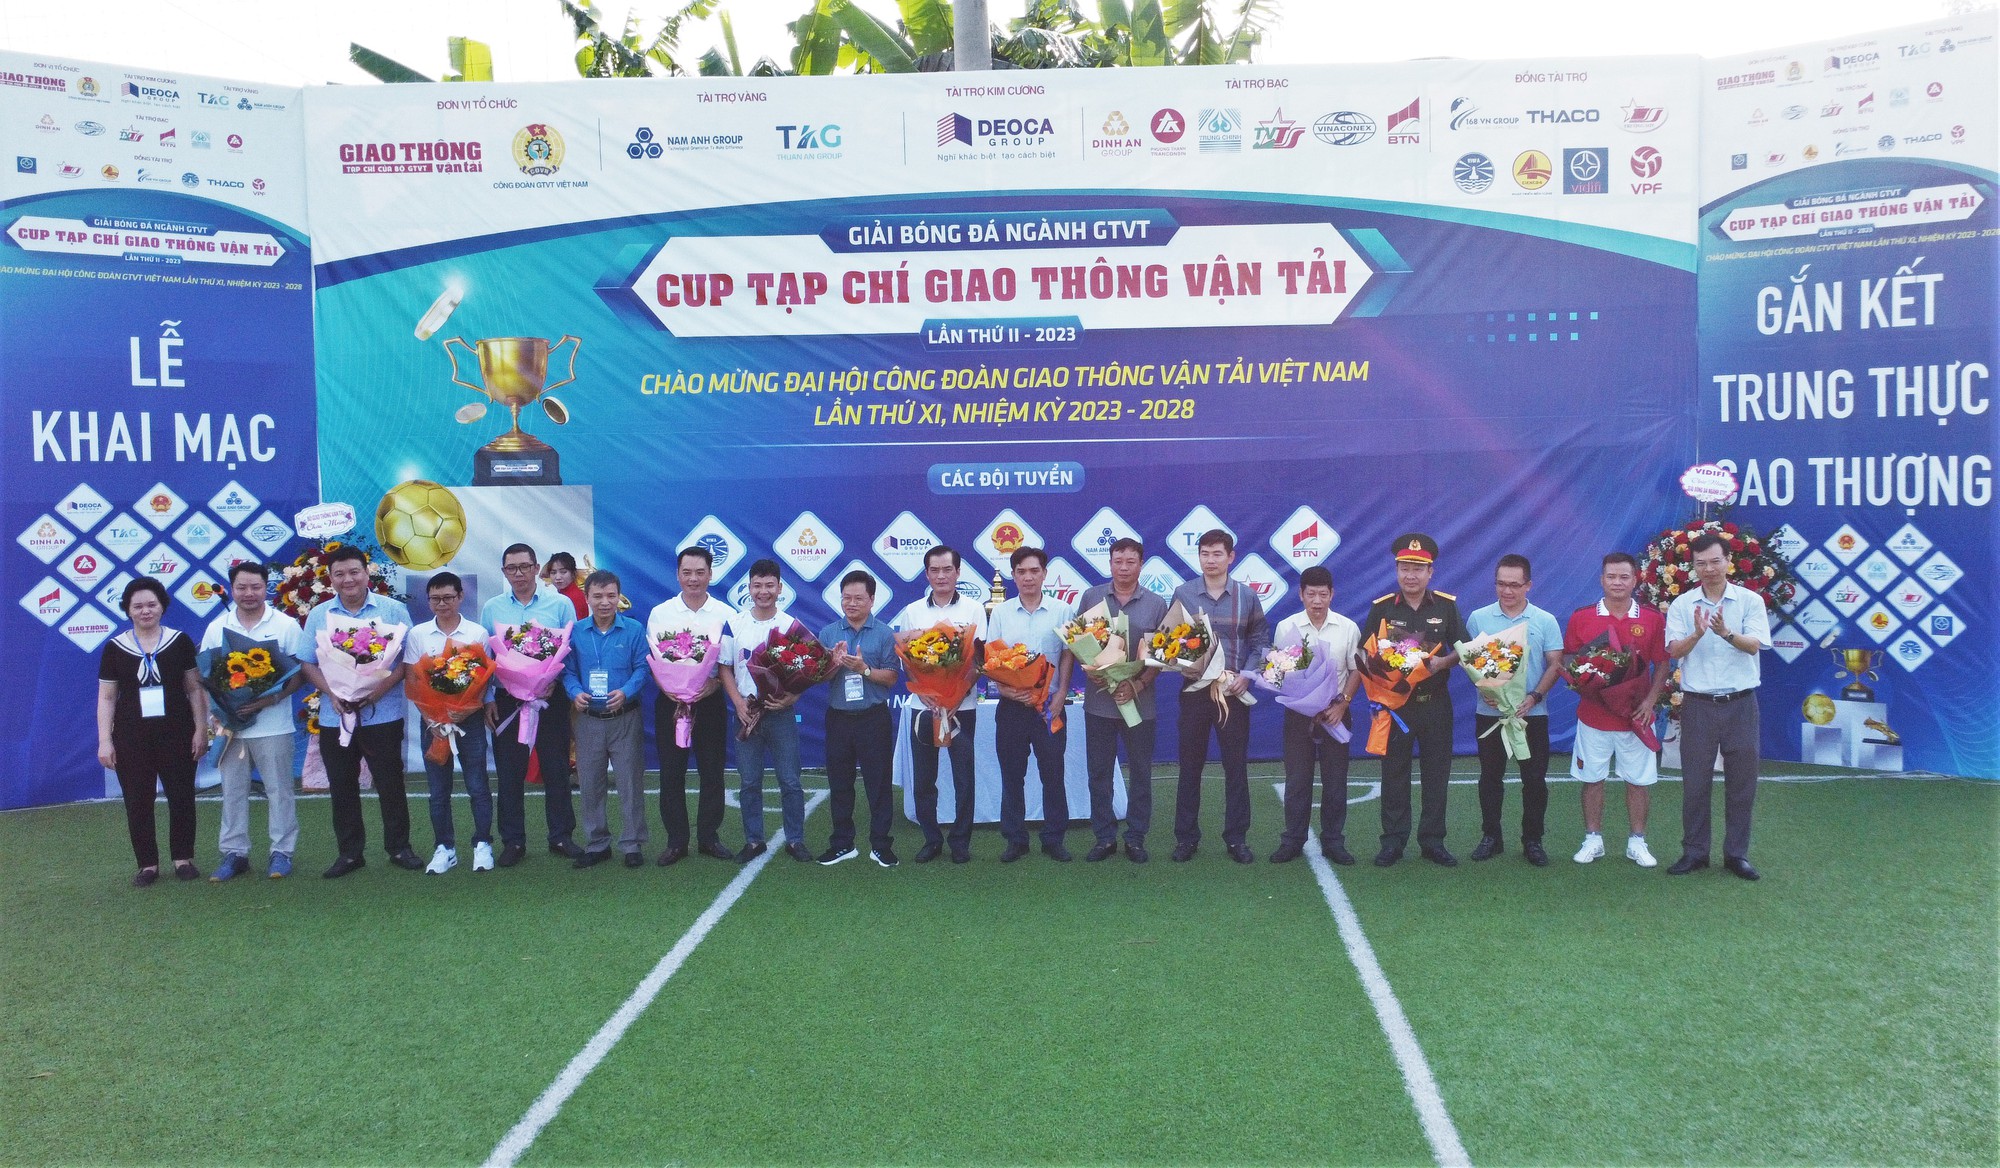 Khai mạc Giải bóng đá ngành GTVT tranh Cup Tạp chí Giao thông vận tải năm 2023 - Ảnh 6.